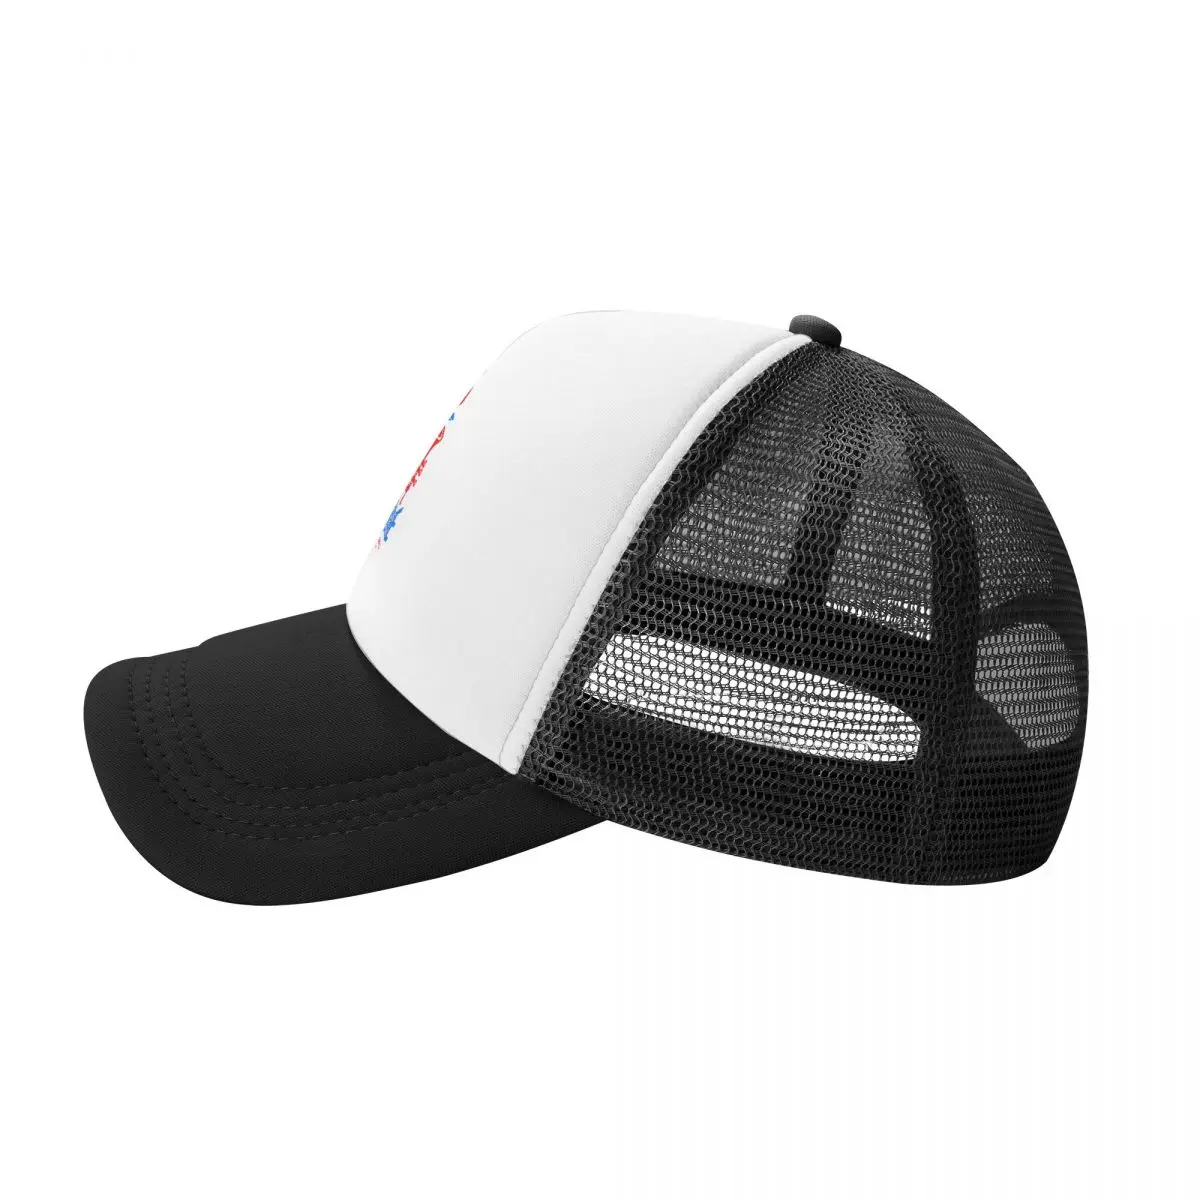 Miles Davis Unisex Kap Rahat Düz beyzbol şapkası metal bant Ayarlanabilir Snapback şoför şapkaları Kadınlar Erkekler İçin